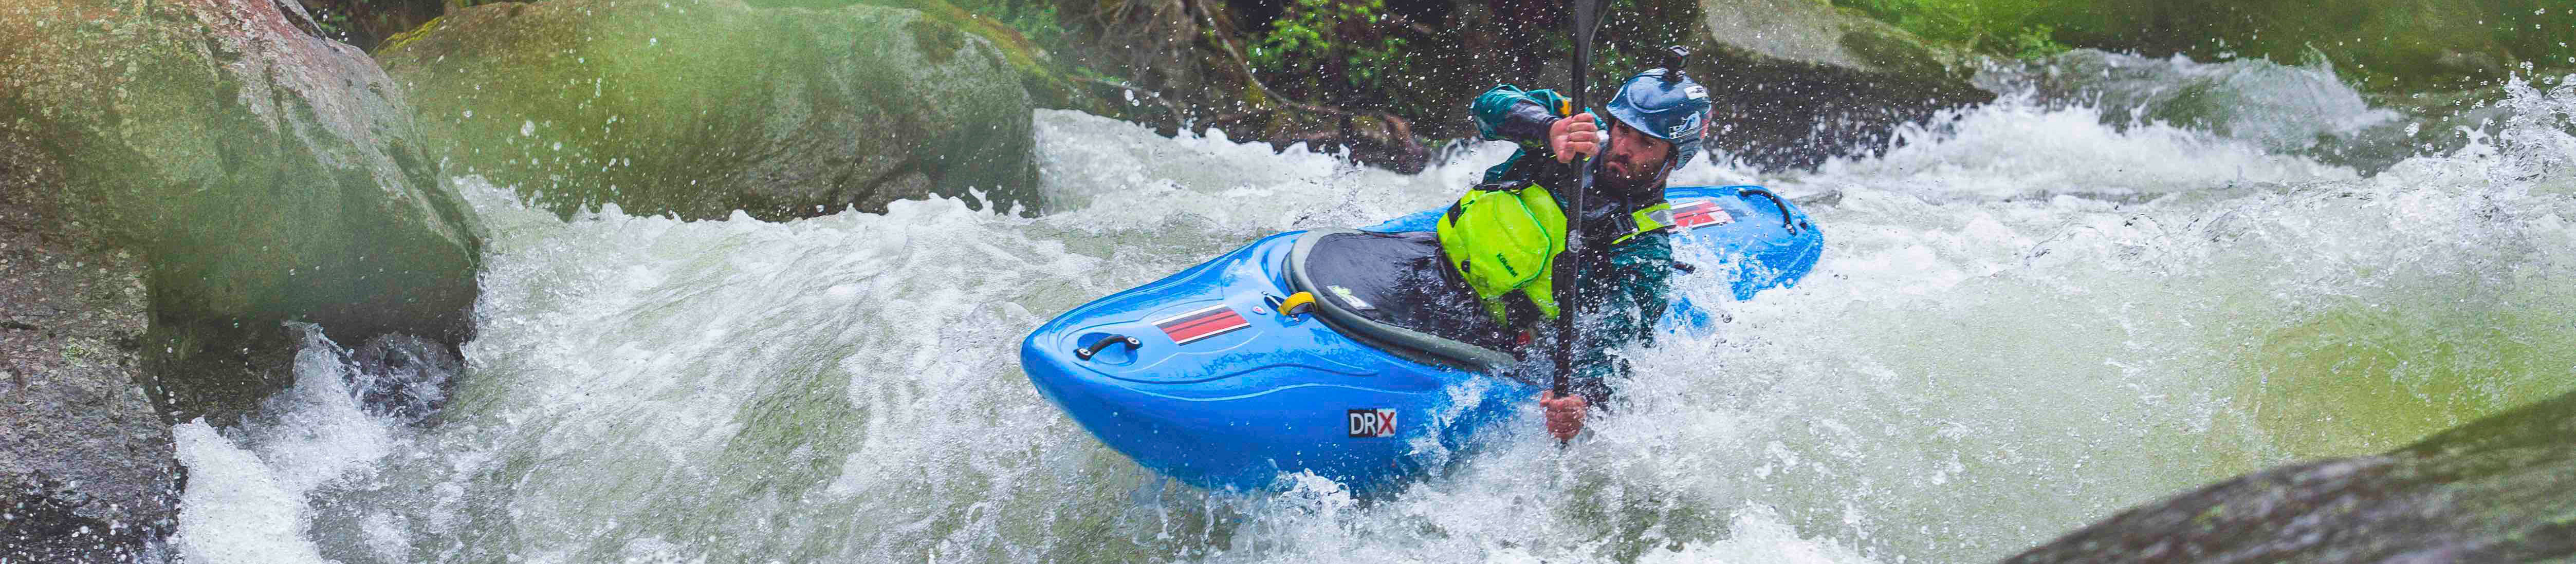 Analisis Kayak aguas bravas